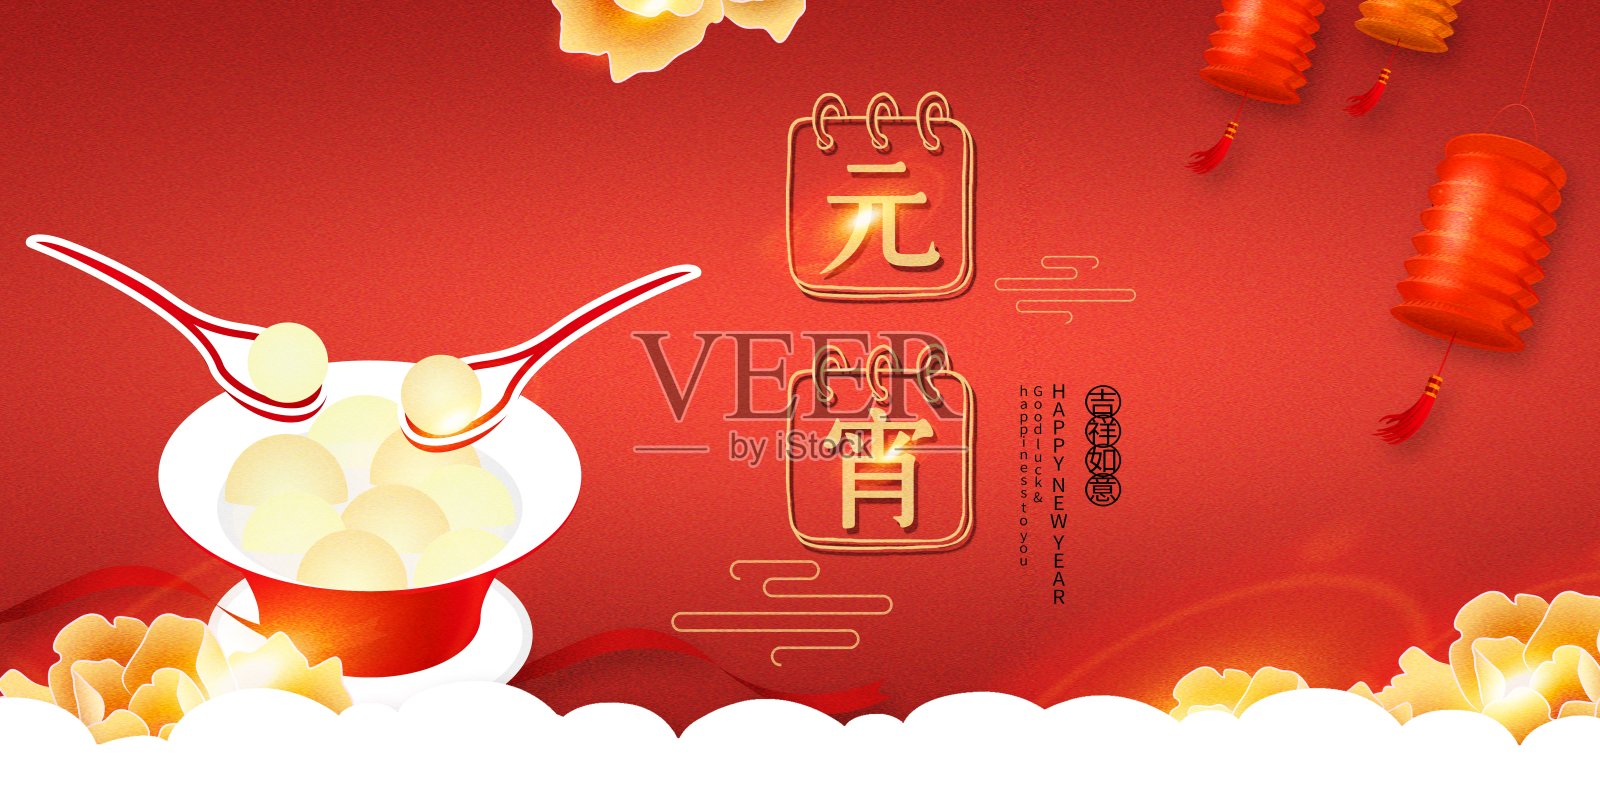 喜庆中国年元宵佳节节日展板设计模板素材